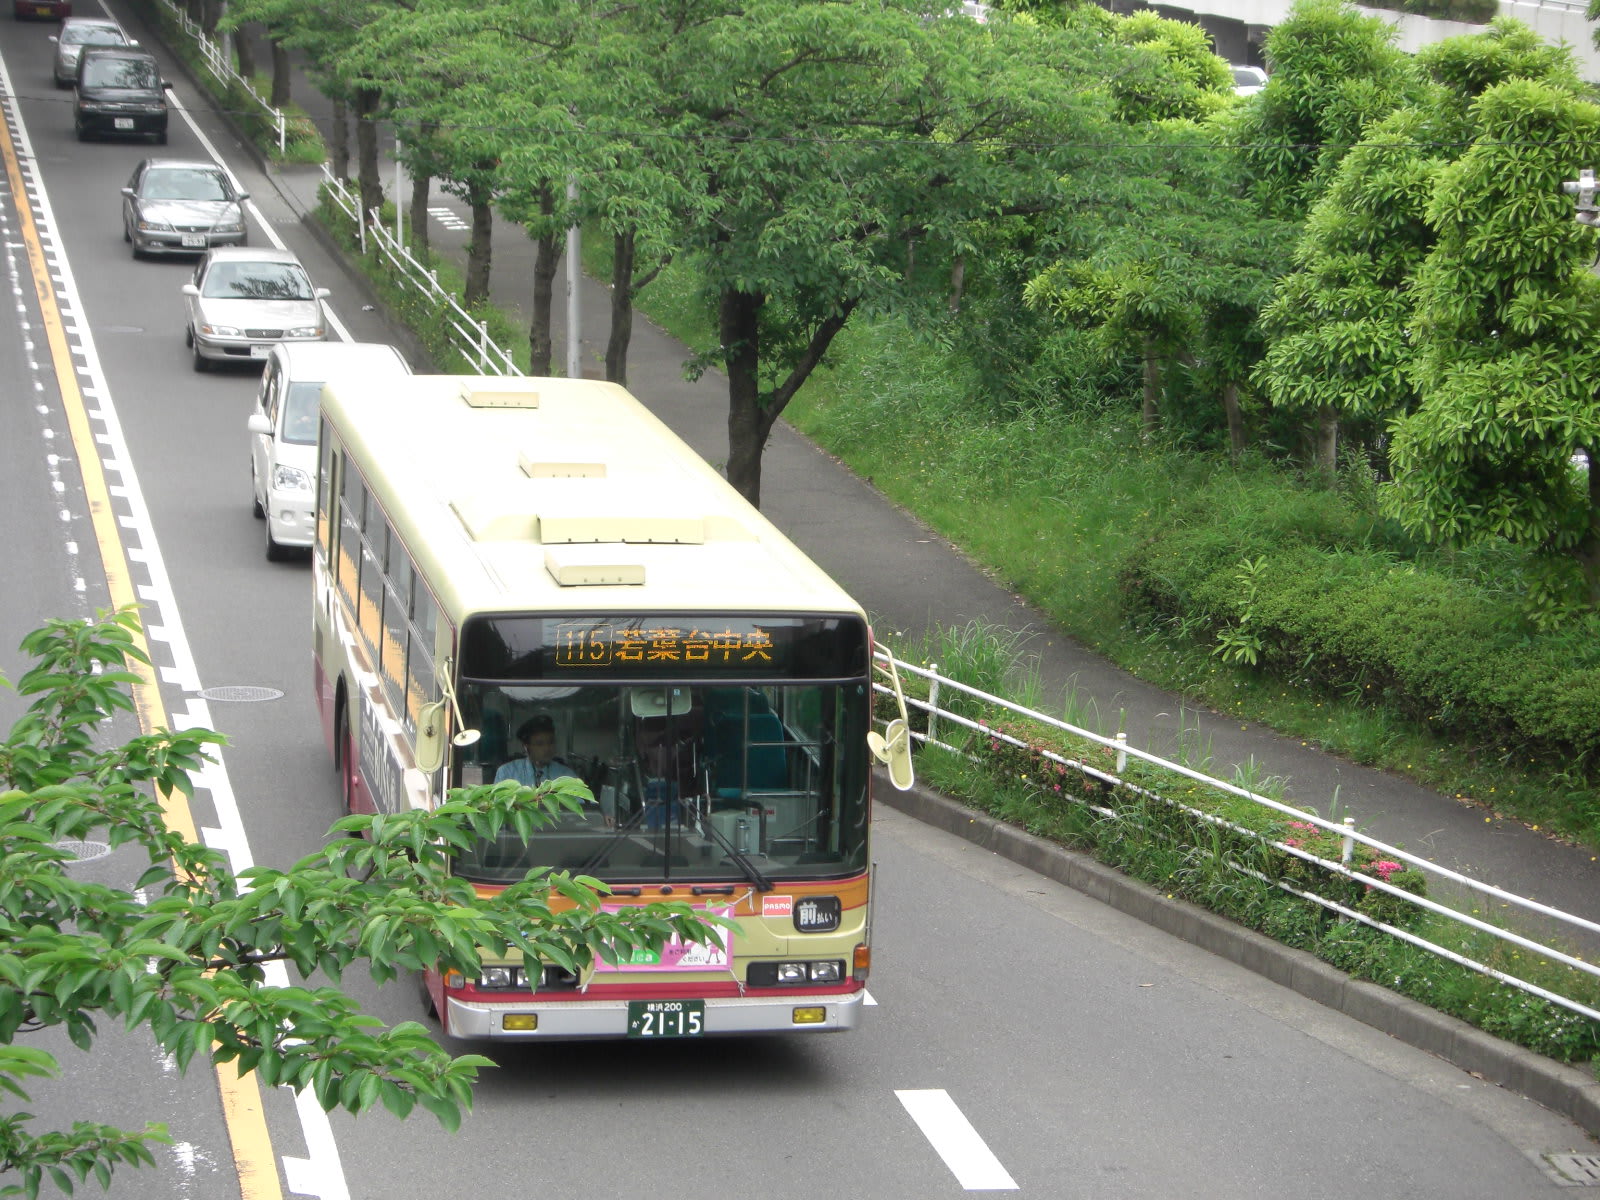 １１５系統 若葉台中央 鶴ヶ峰駅 かなちゅうバス全線制覇の記録